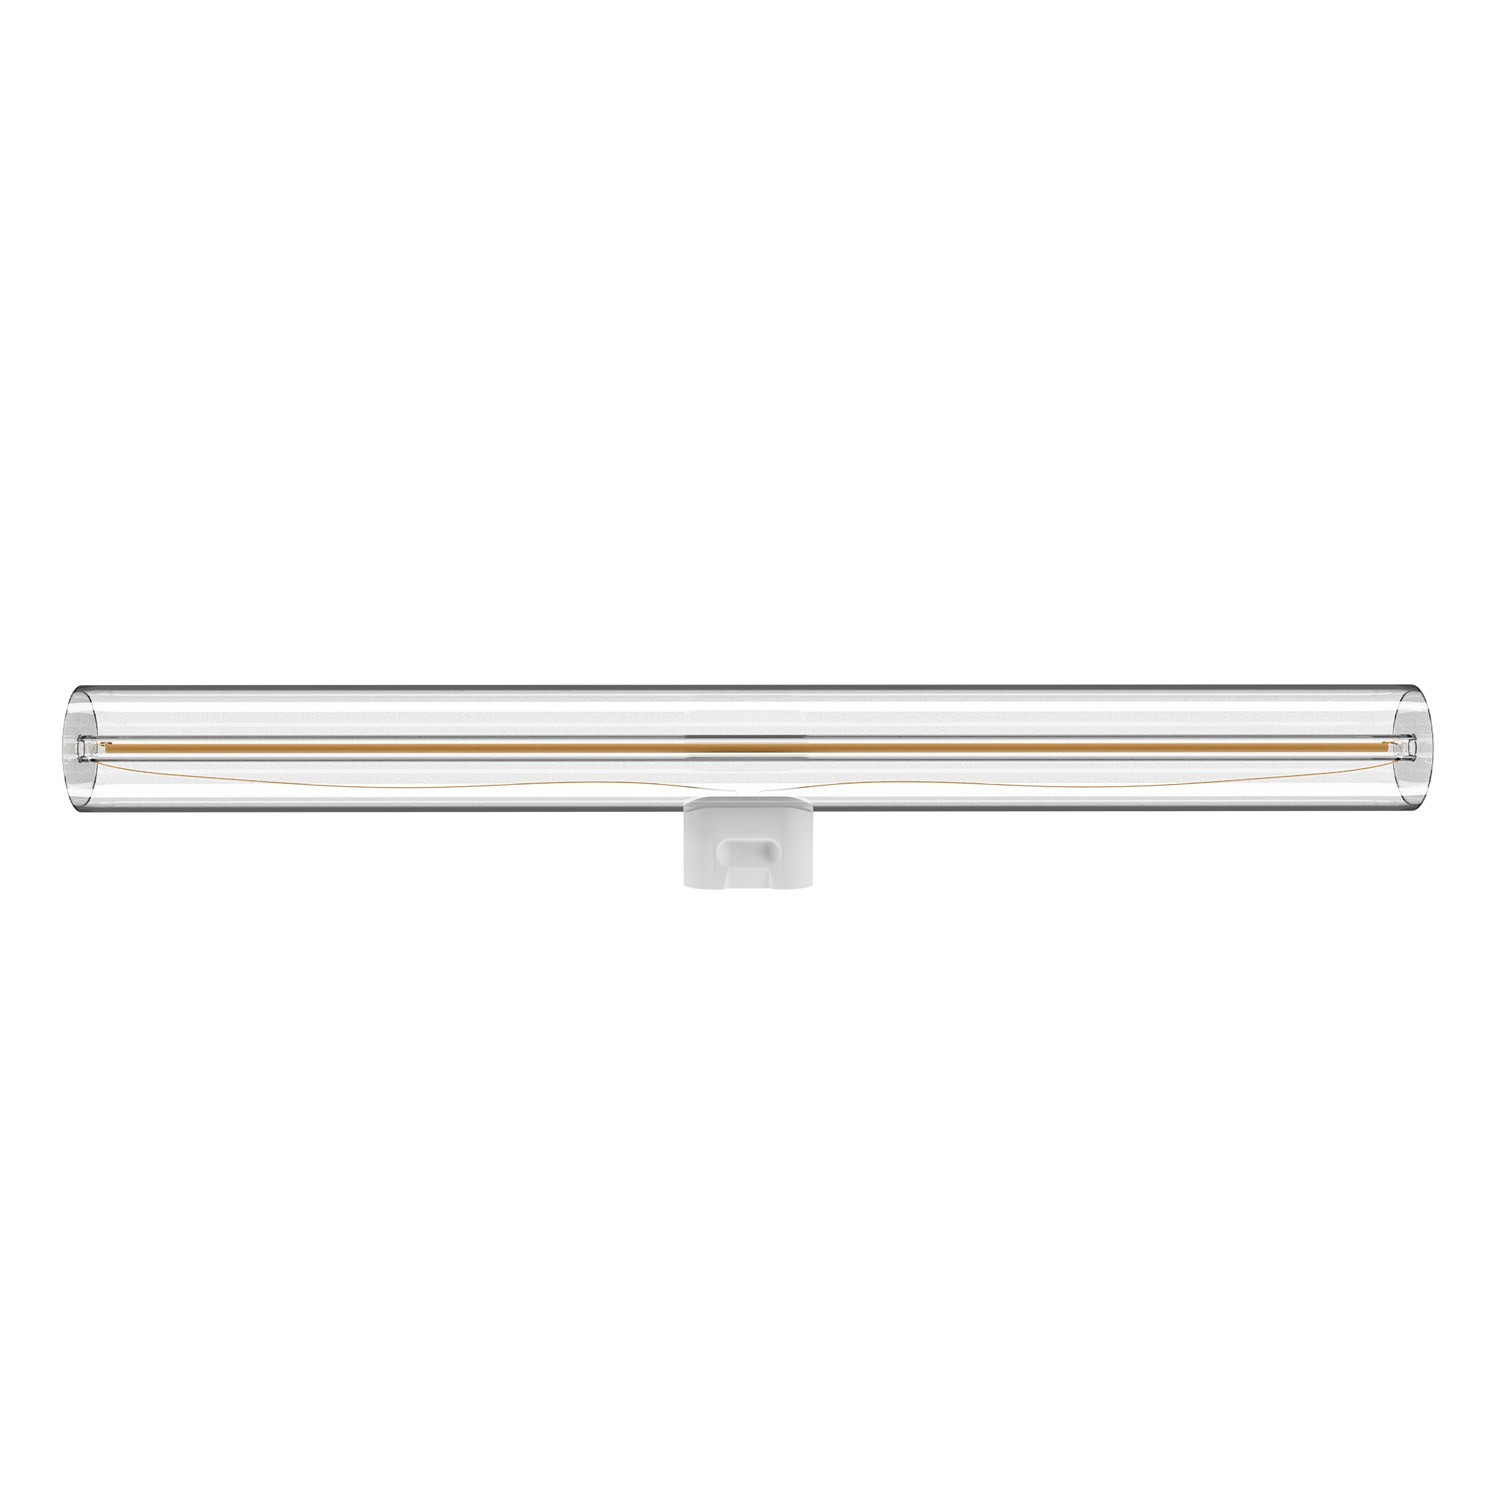 Lampe suspension en 3 bras asymétriques esse14 avec Rose-One, câble textile et finitions en métal